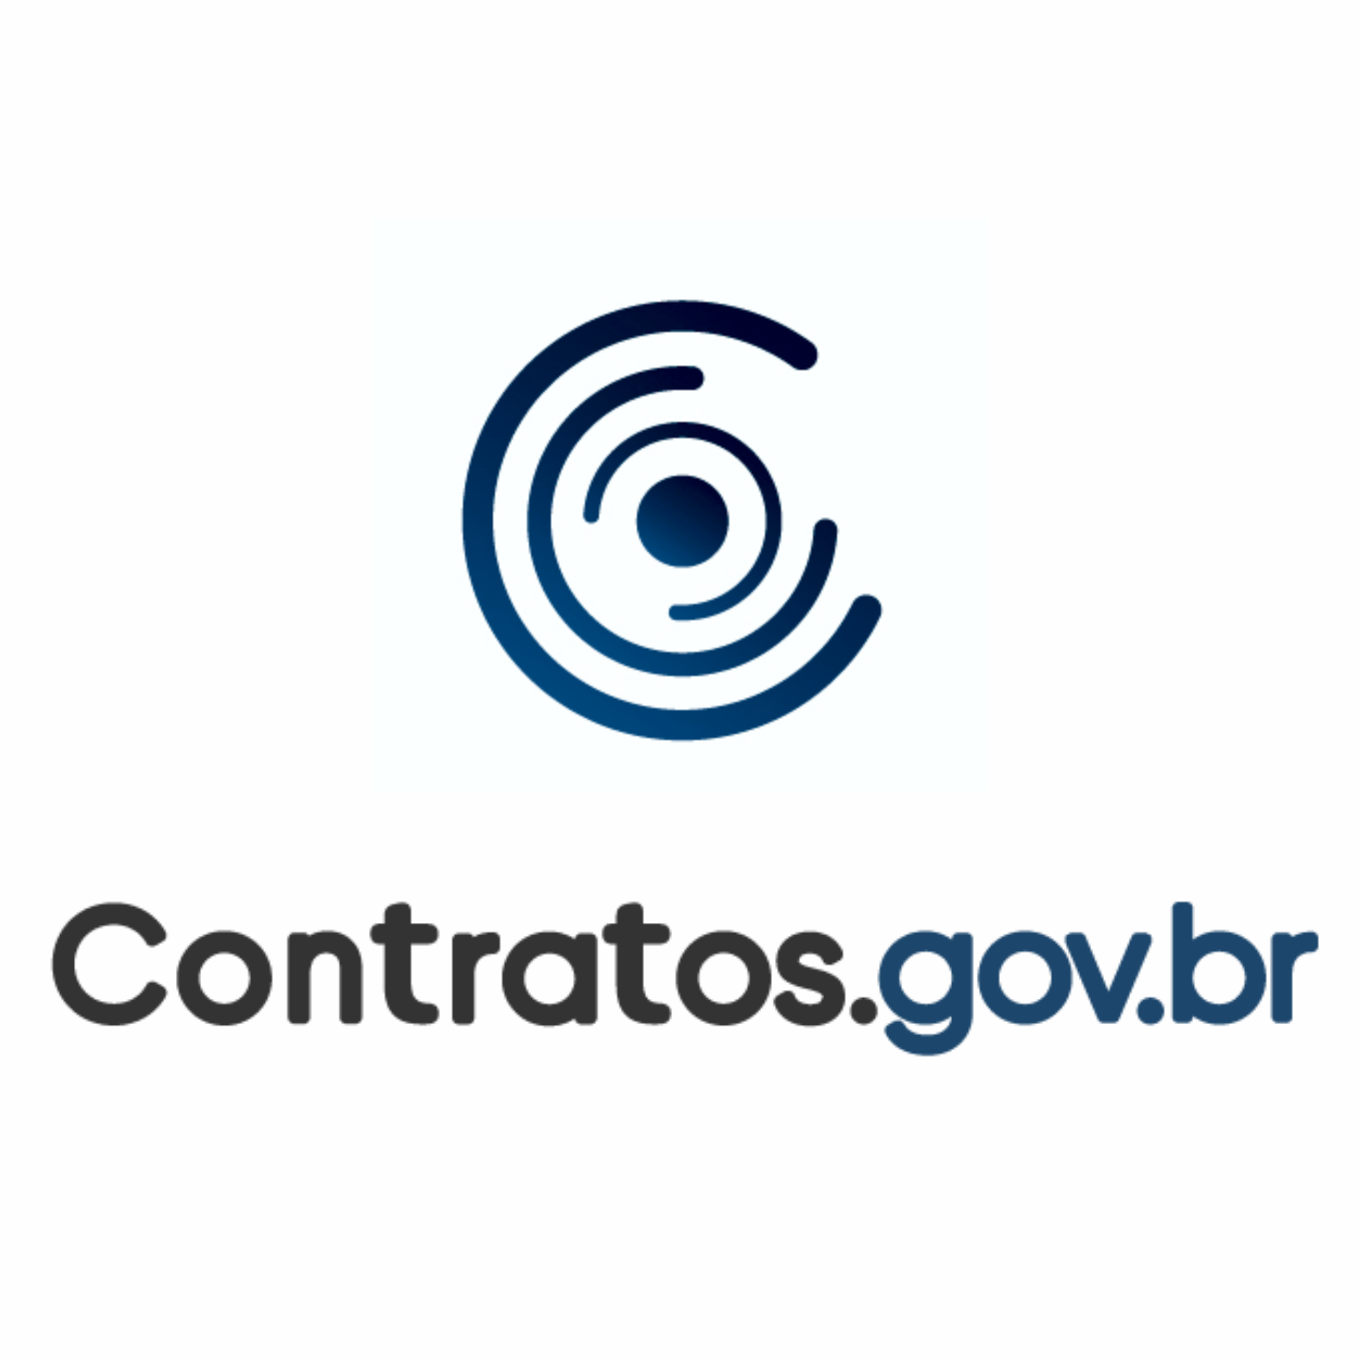 Treinamento Contratos.gov.br - IFTM